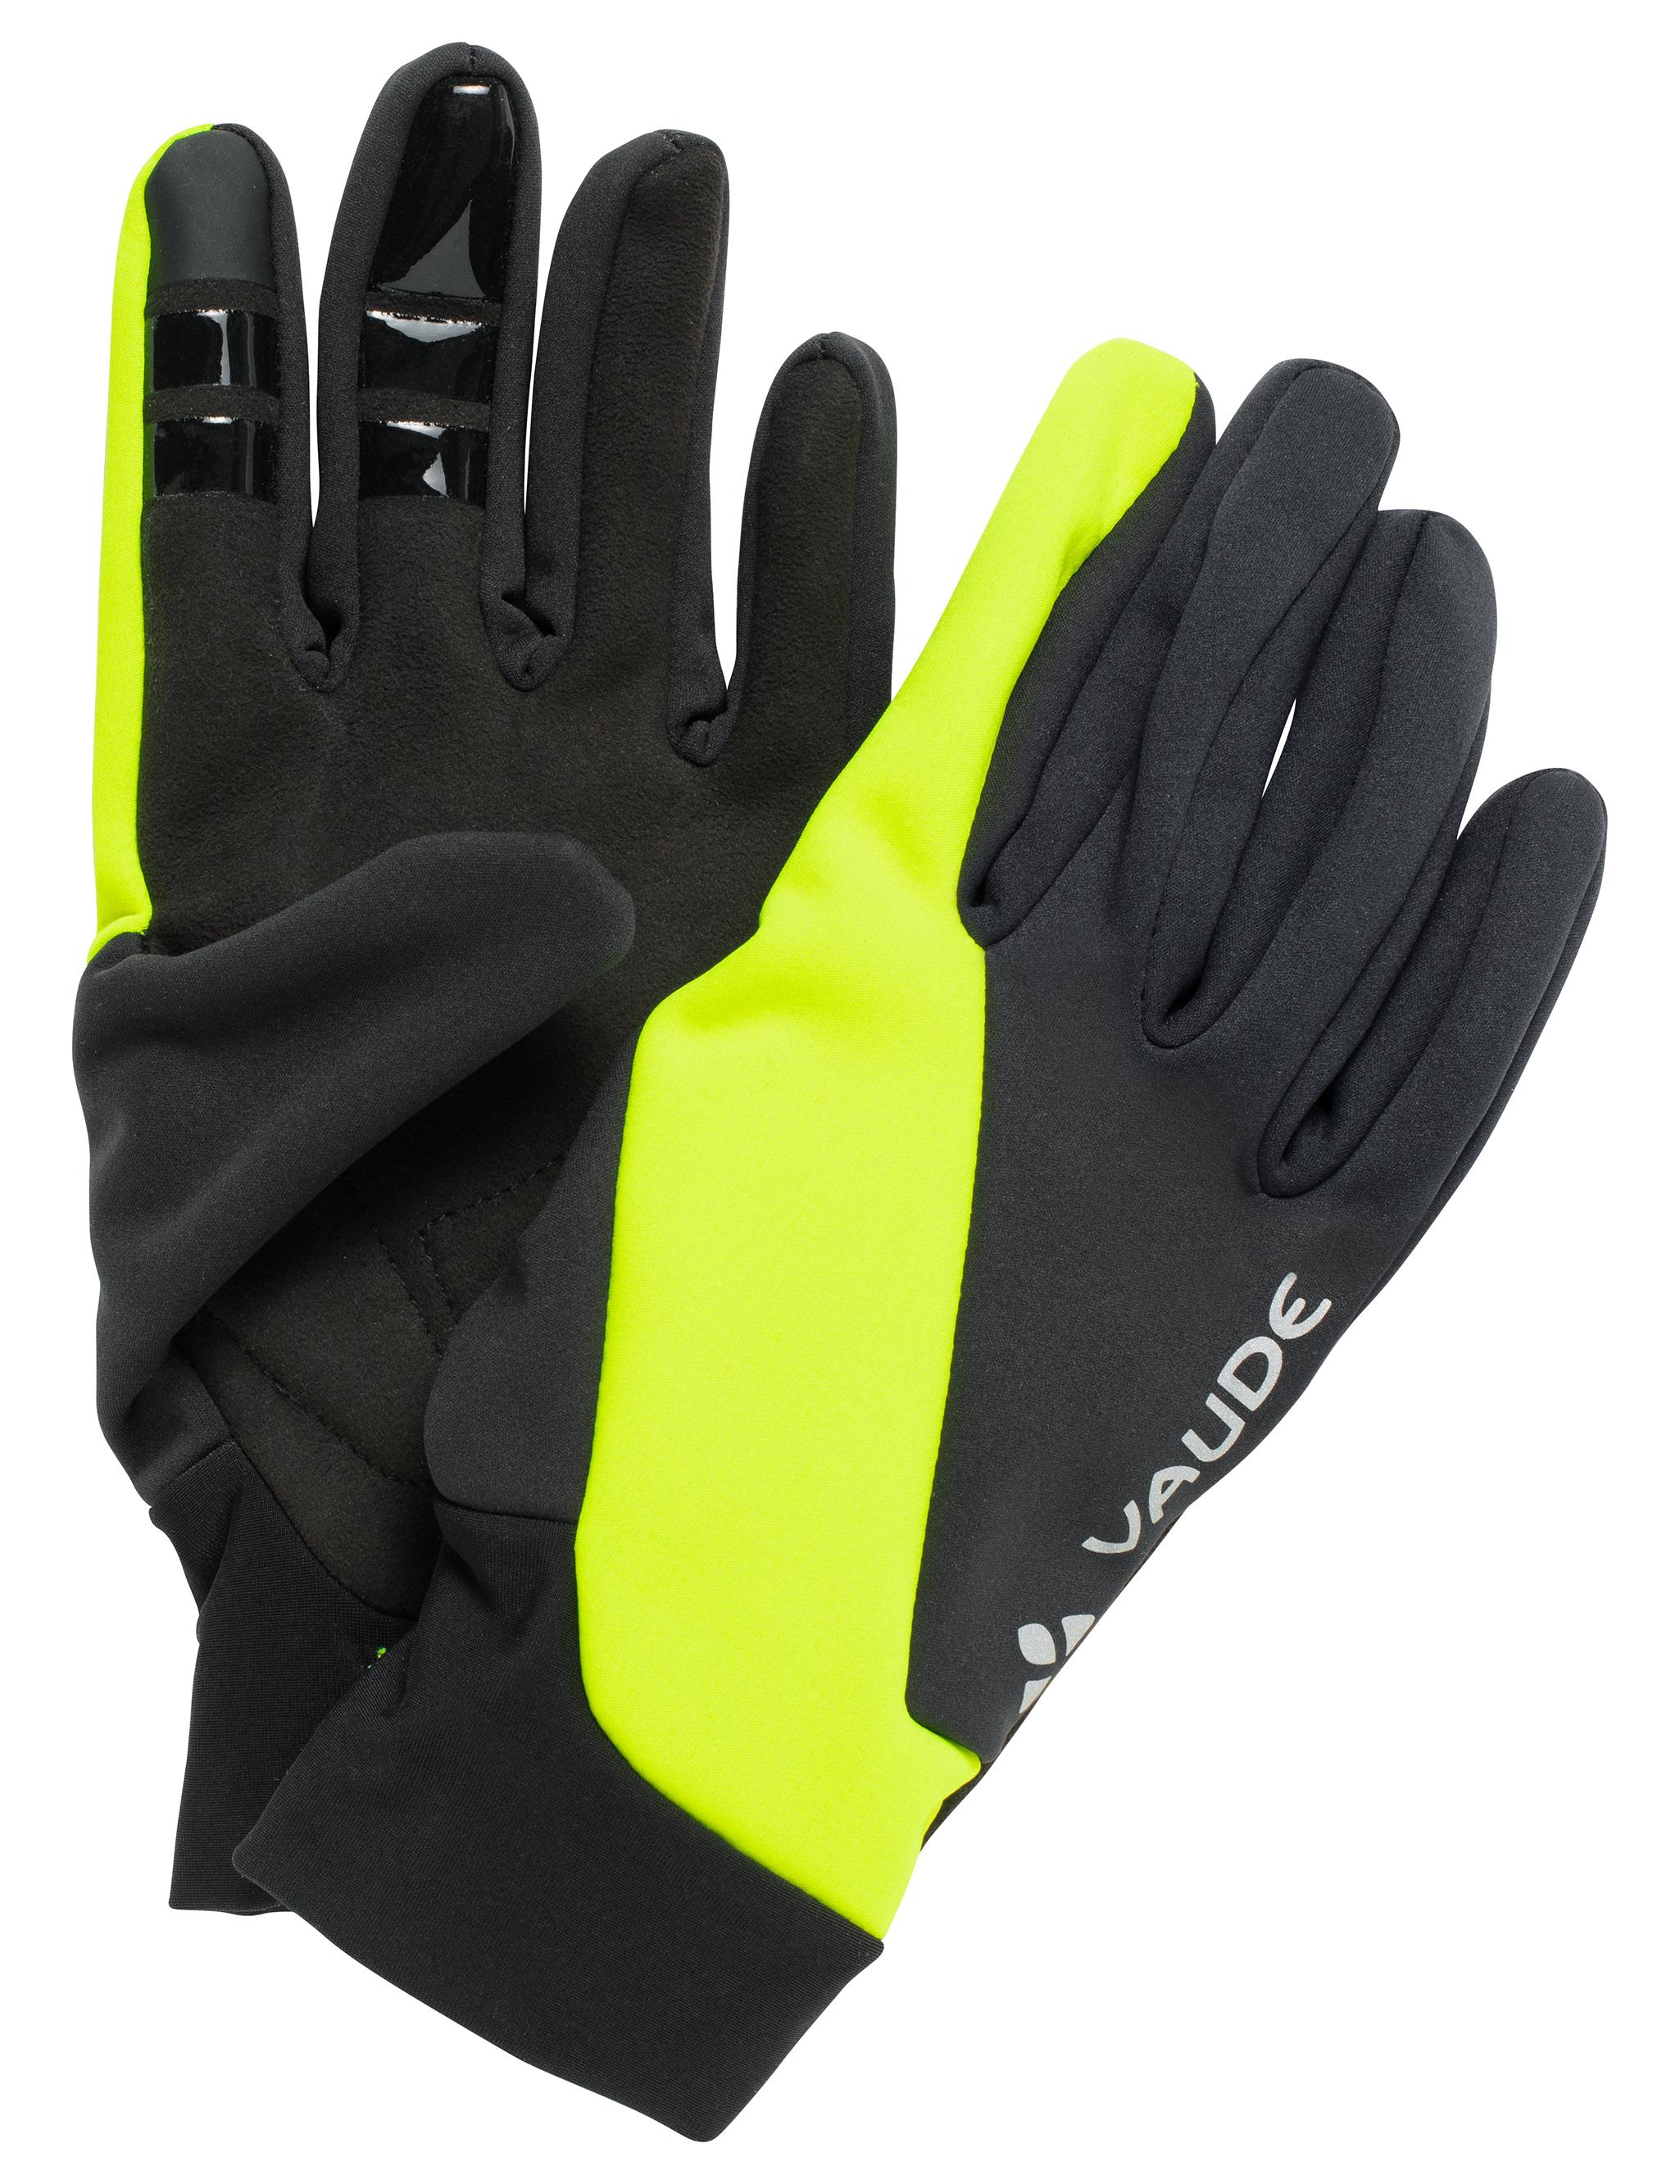 VAUDE Kuro Warm Online kaufen yellow von Shop Fahrradhandschuhe im SportScheck neon Gloves